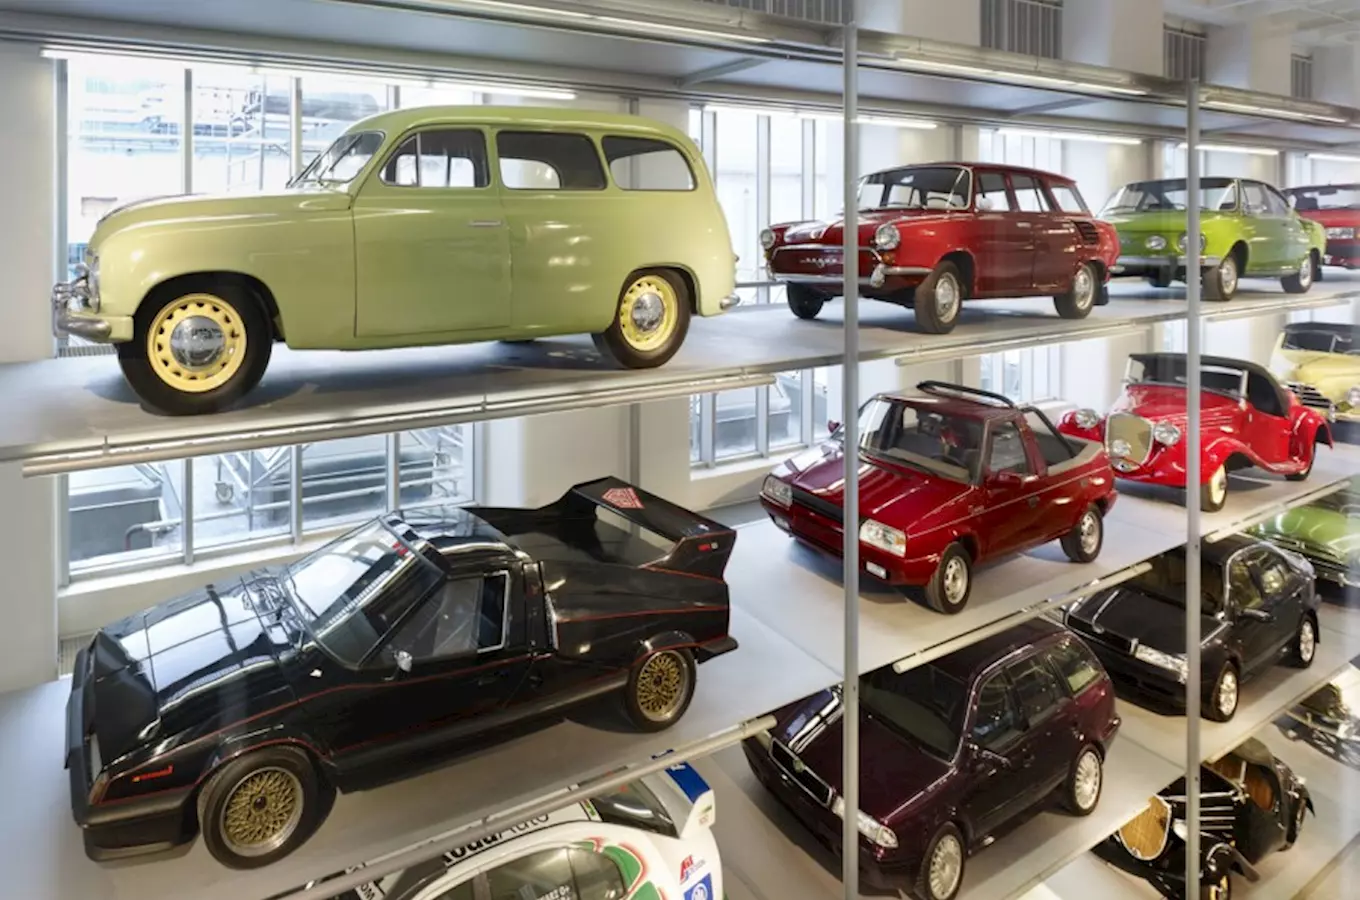 Seznamte se s historií výroby automobilů značky Škoda